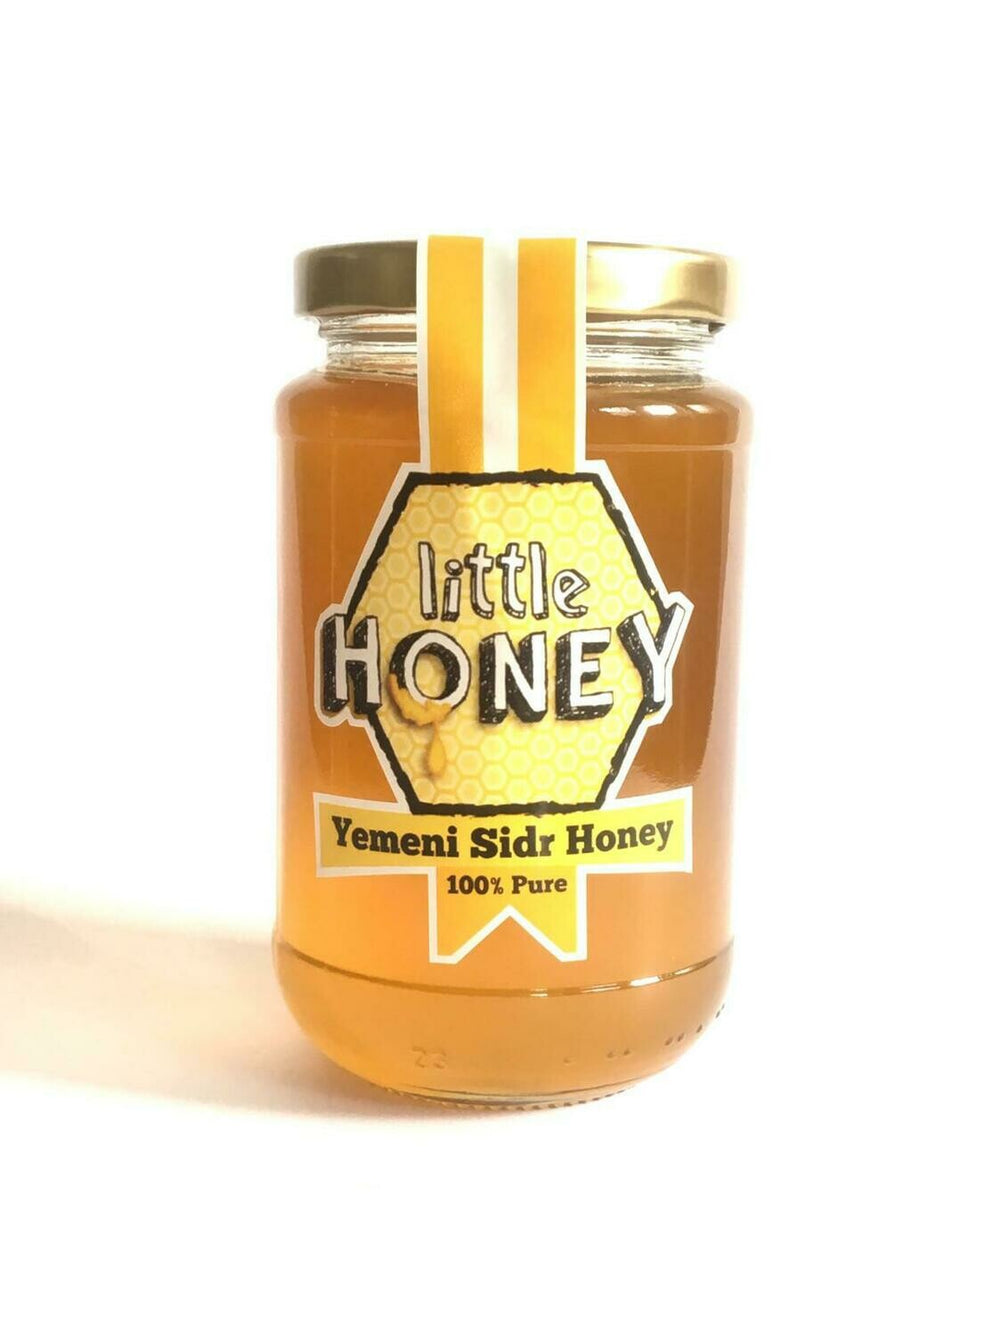 450g Yemeni Sidr Honey Jar